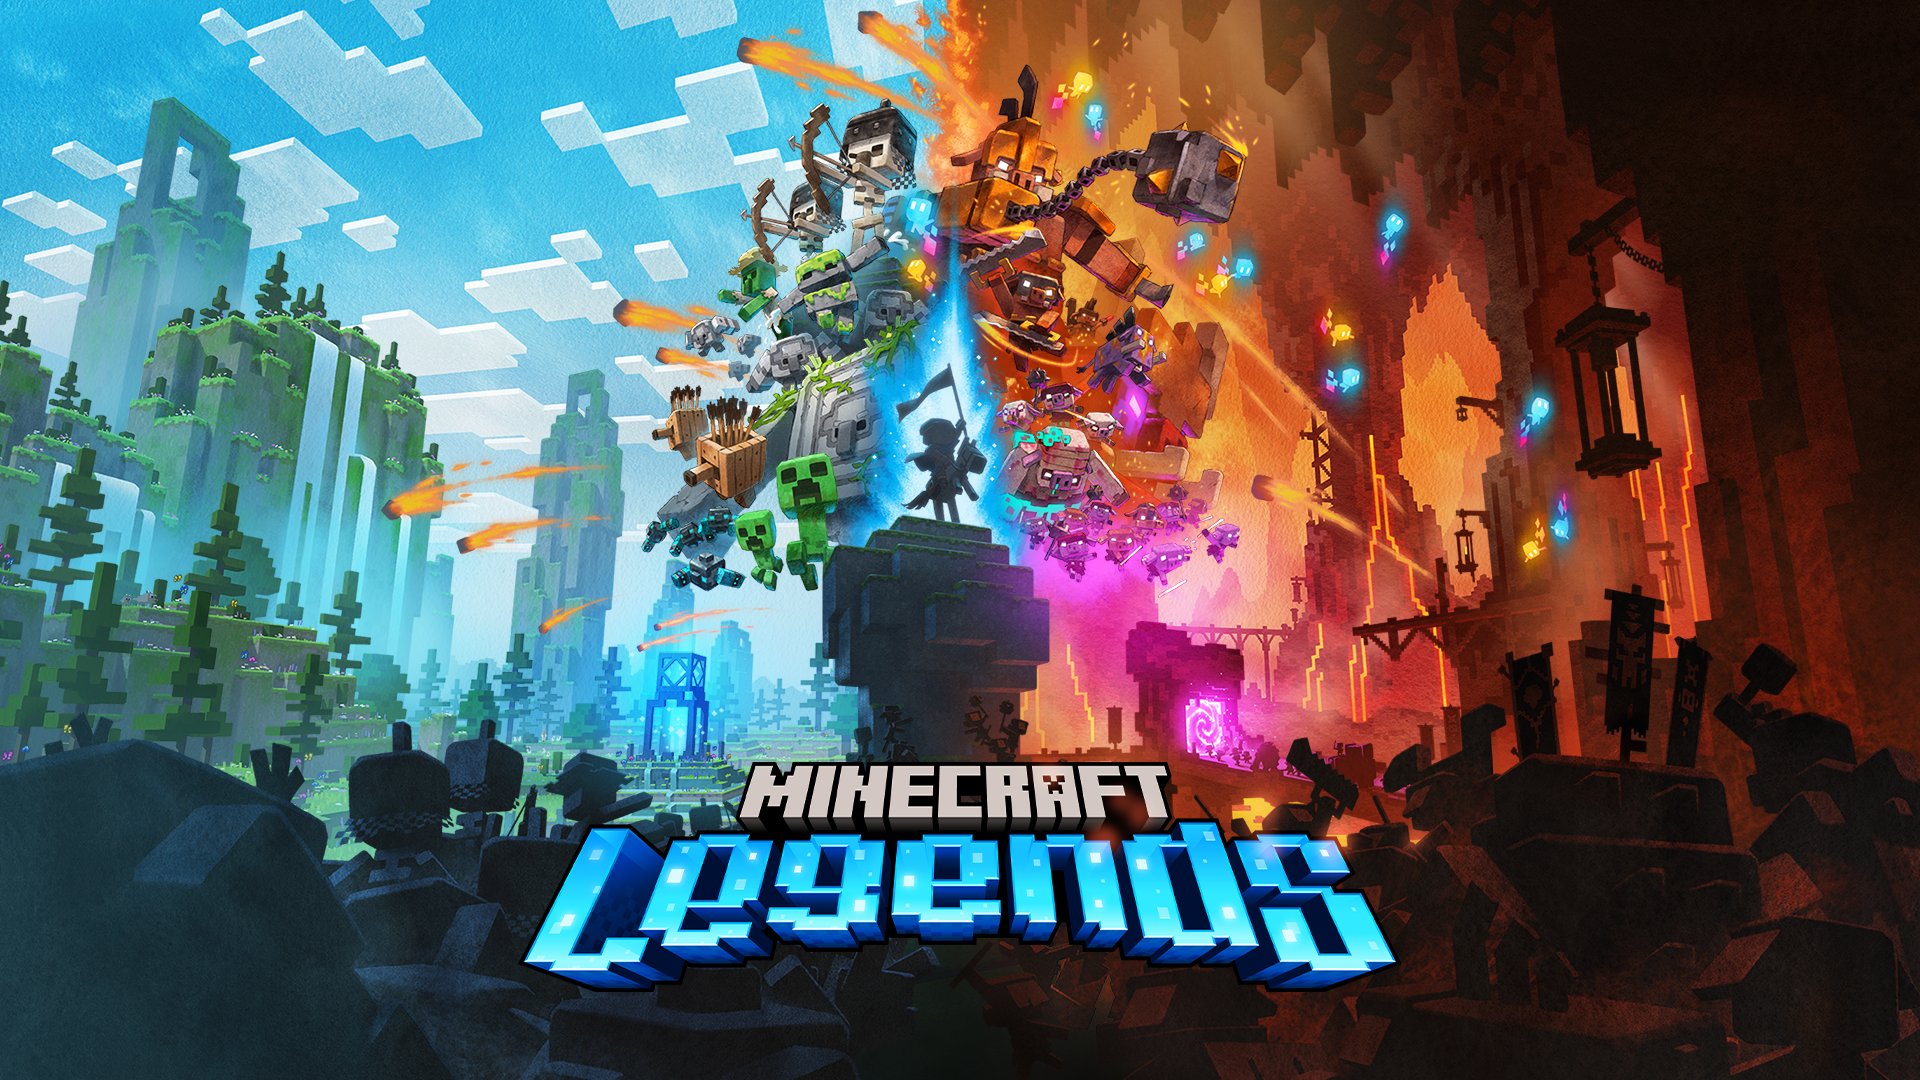 Minecraft Legends là một trò chơi chiến lược hấp dẫn và đầy thử thách. Hãy tìm hiểu về những chiến thuật và quyền năng đặc biệt để chiến thắng trong trò chơi này. Hình nền Minecraft Legends sẽ giúp bạn nhớ lại những khoảnh khắc đáng nhớ khi chinh phục những thử thách khó nhằn trong game.